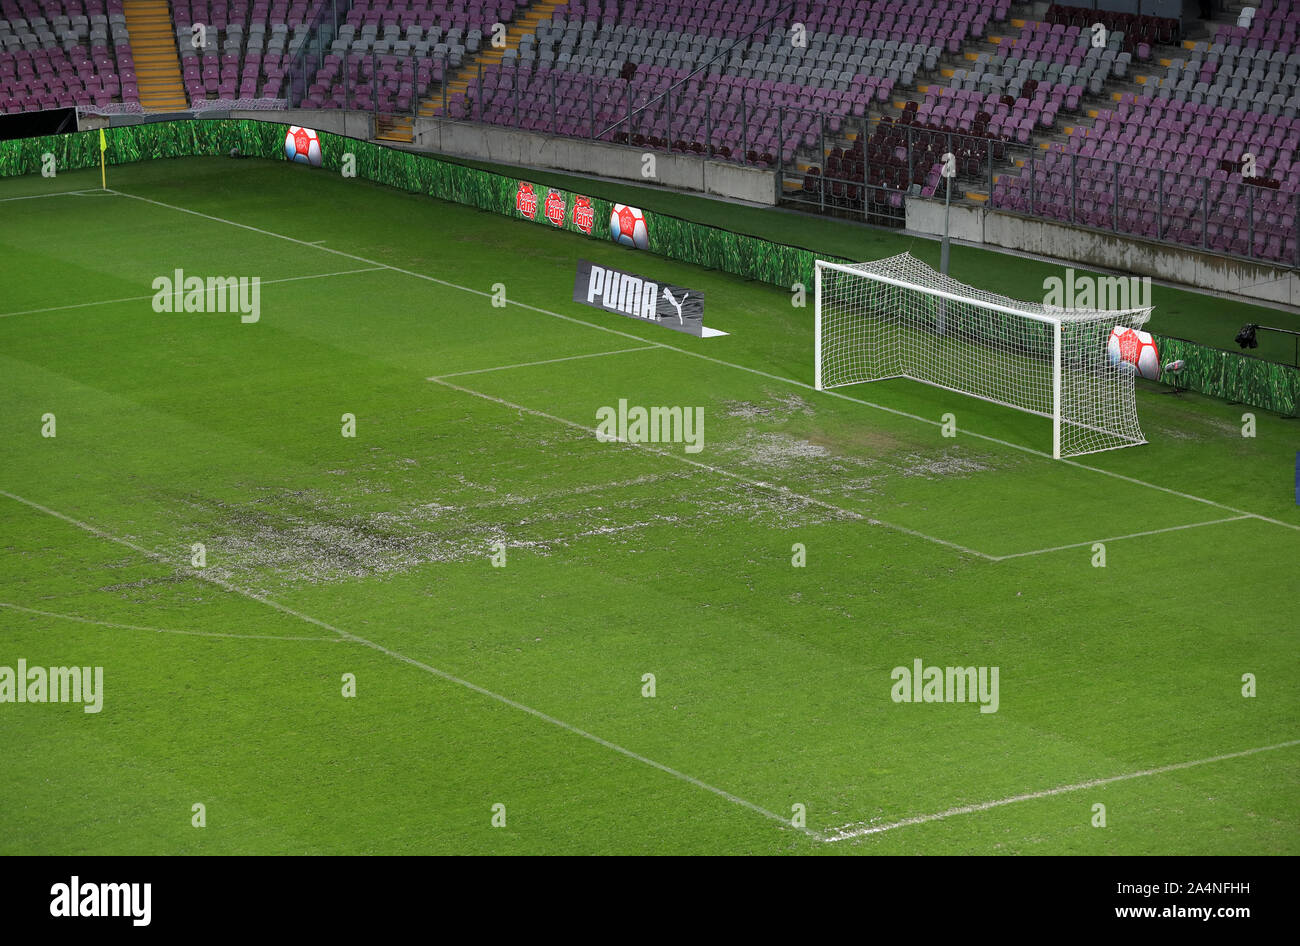 Eine allgemeine Sicht auf das Spielfeld vor der Schweiz v Republik Irland, UEFA Euro 2020 Qualifying Match im Stade de Geneve, Genf. Stockfoto